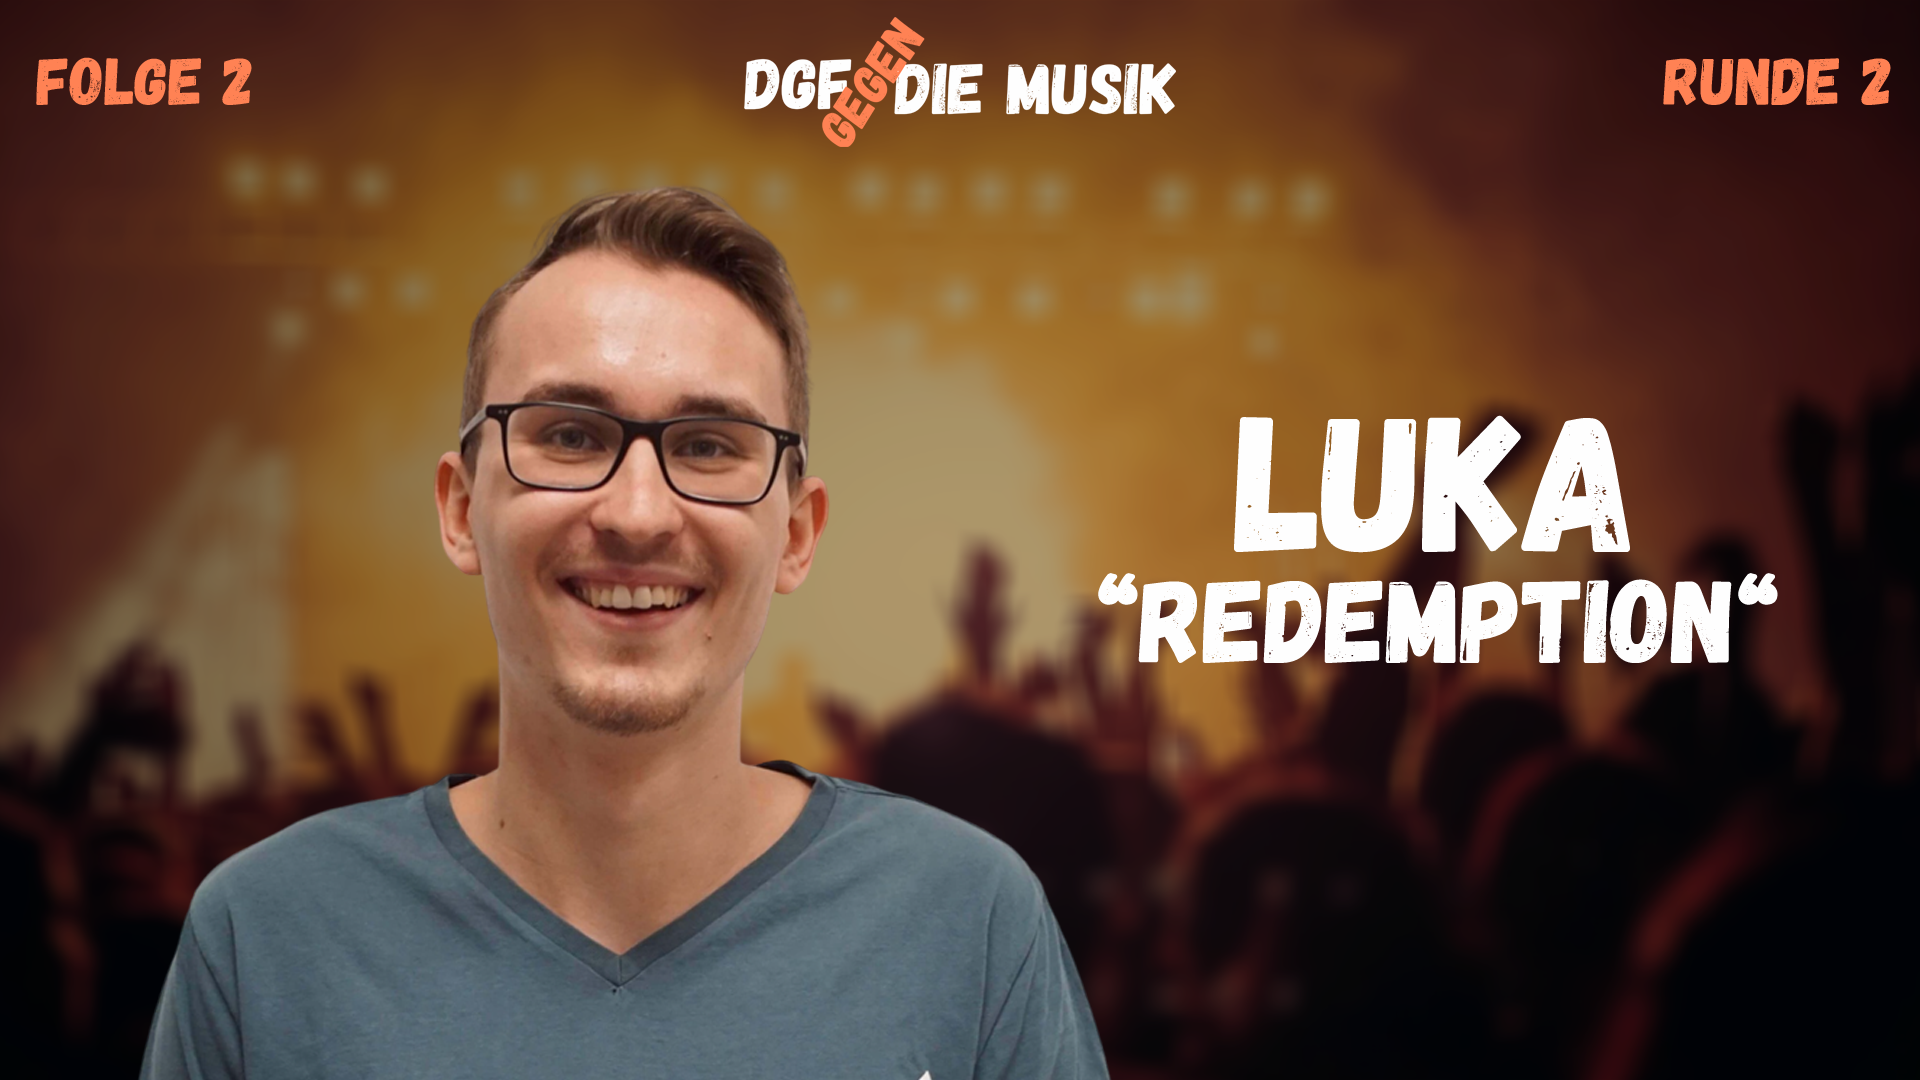 DGDM – Luka (Redemption) // Runde 2 – Folge 2